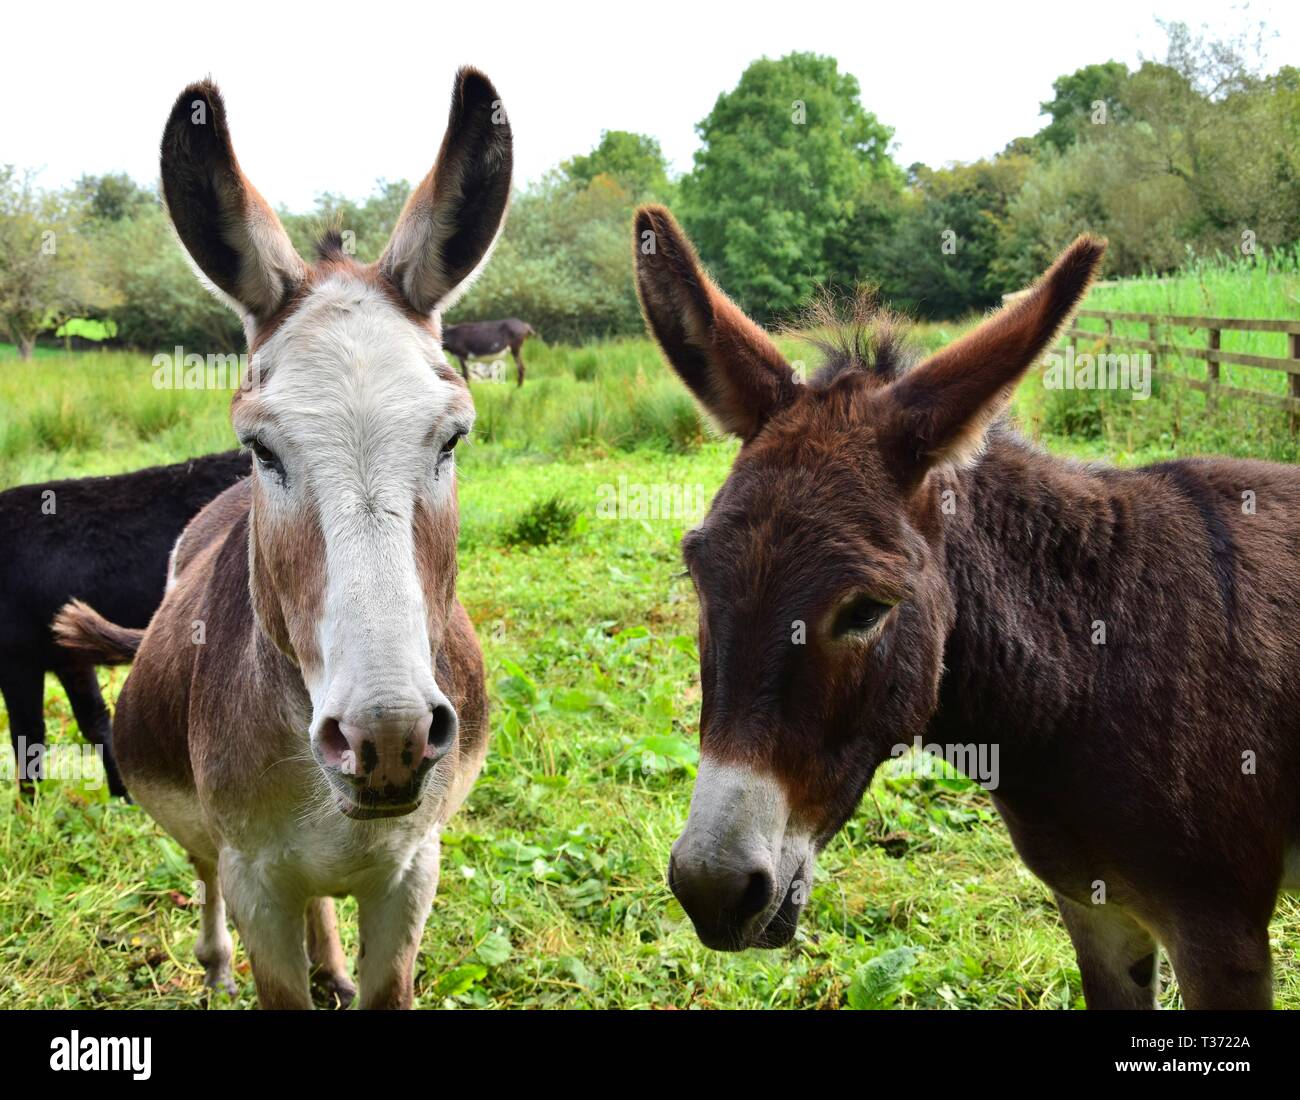 Portrait of two cute donkeys on a meadow in Ireland. Stock Photo